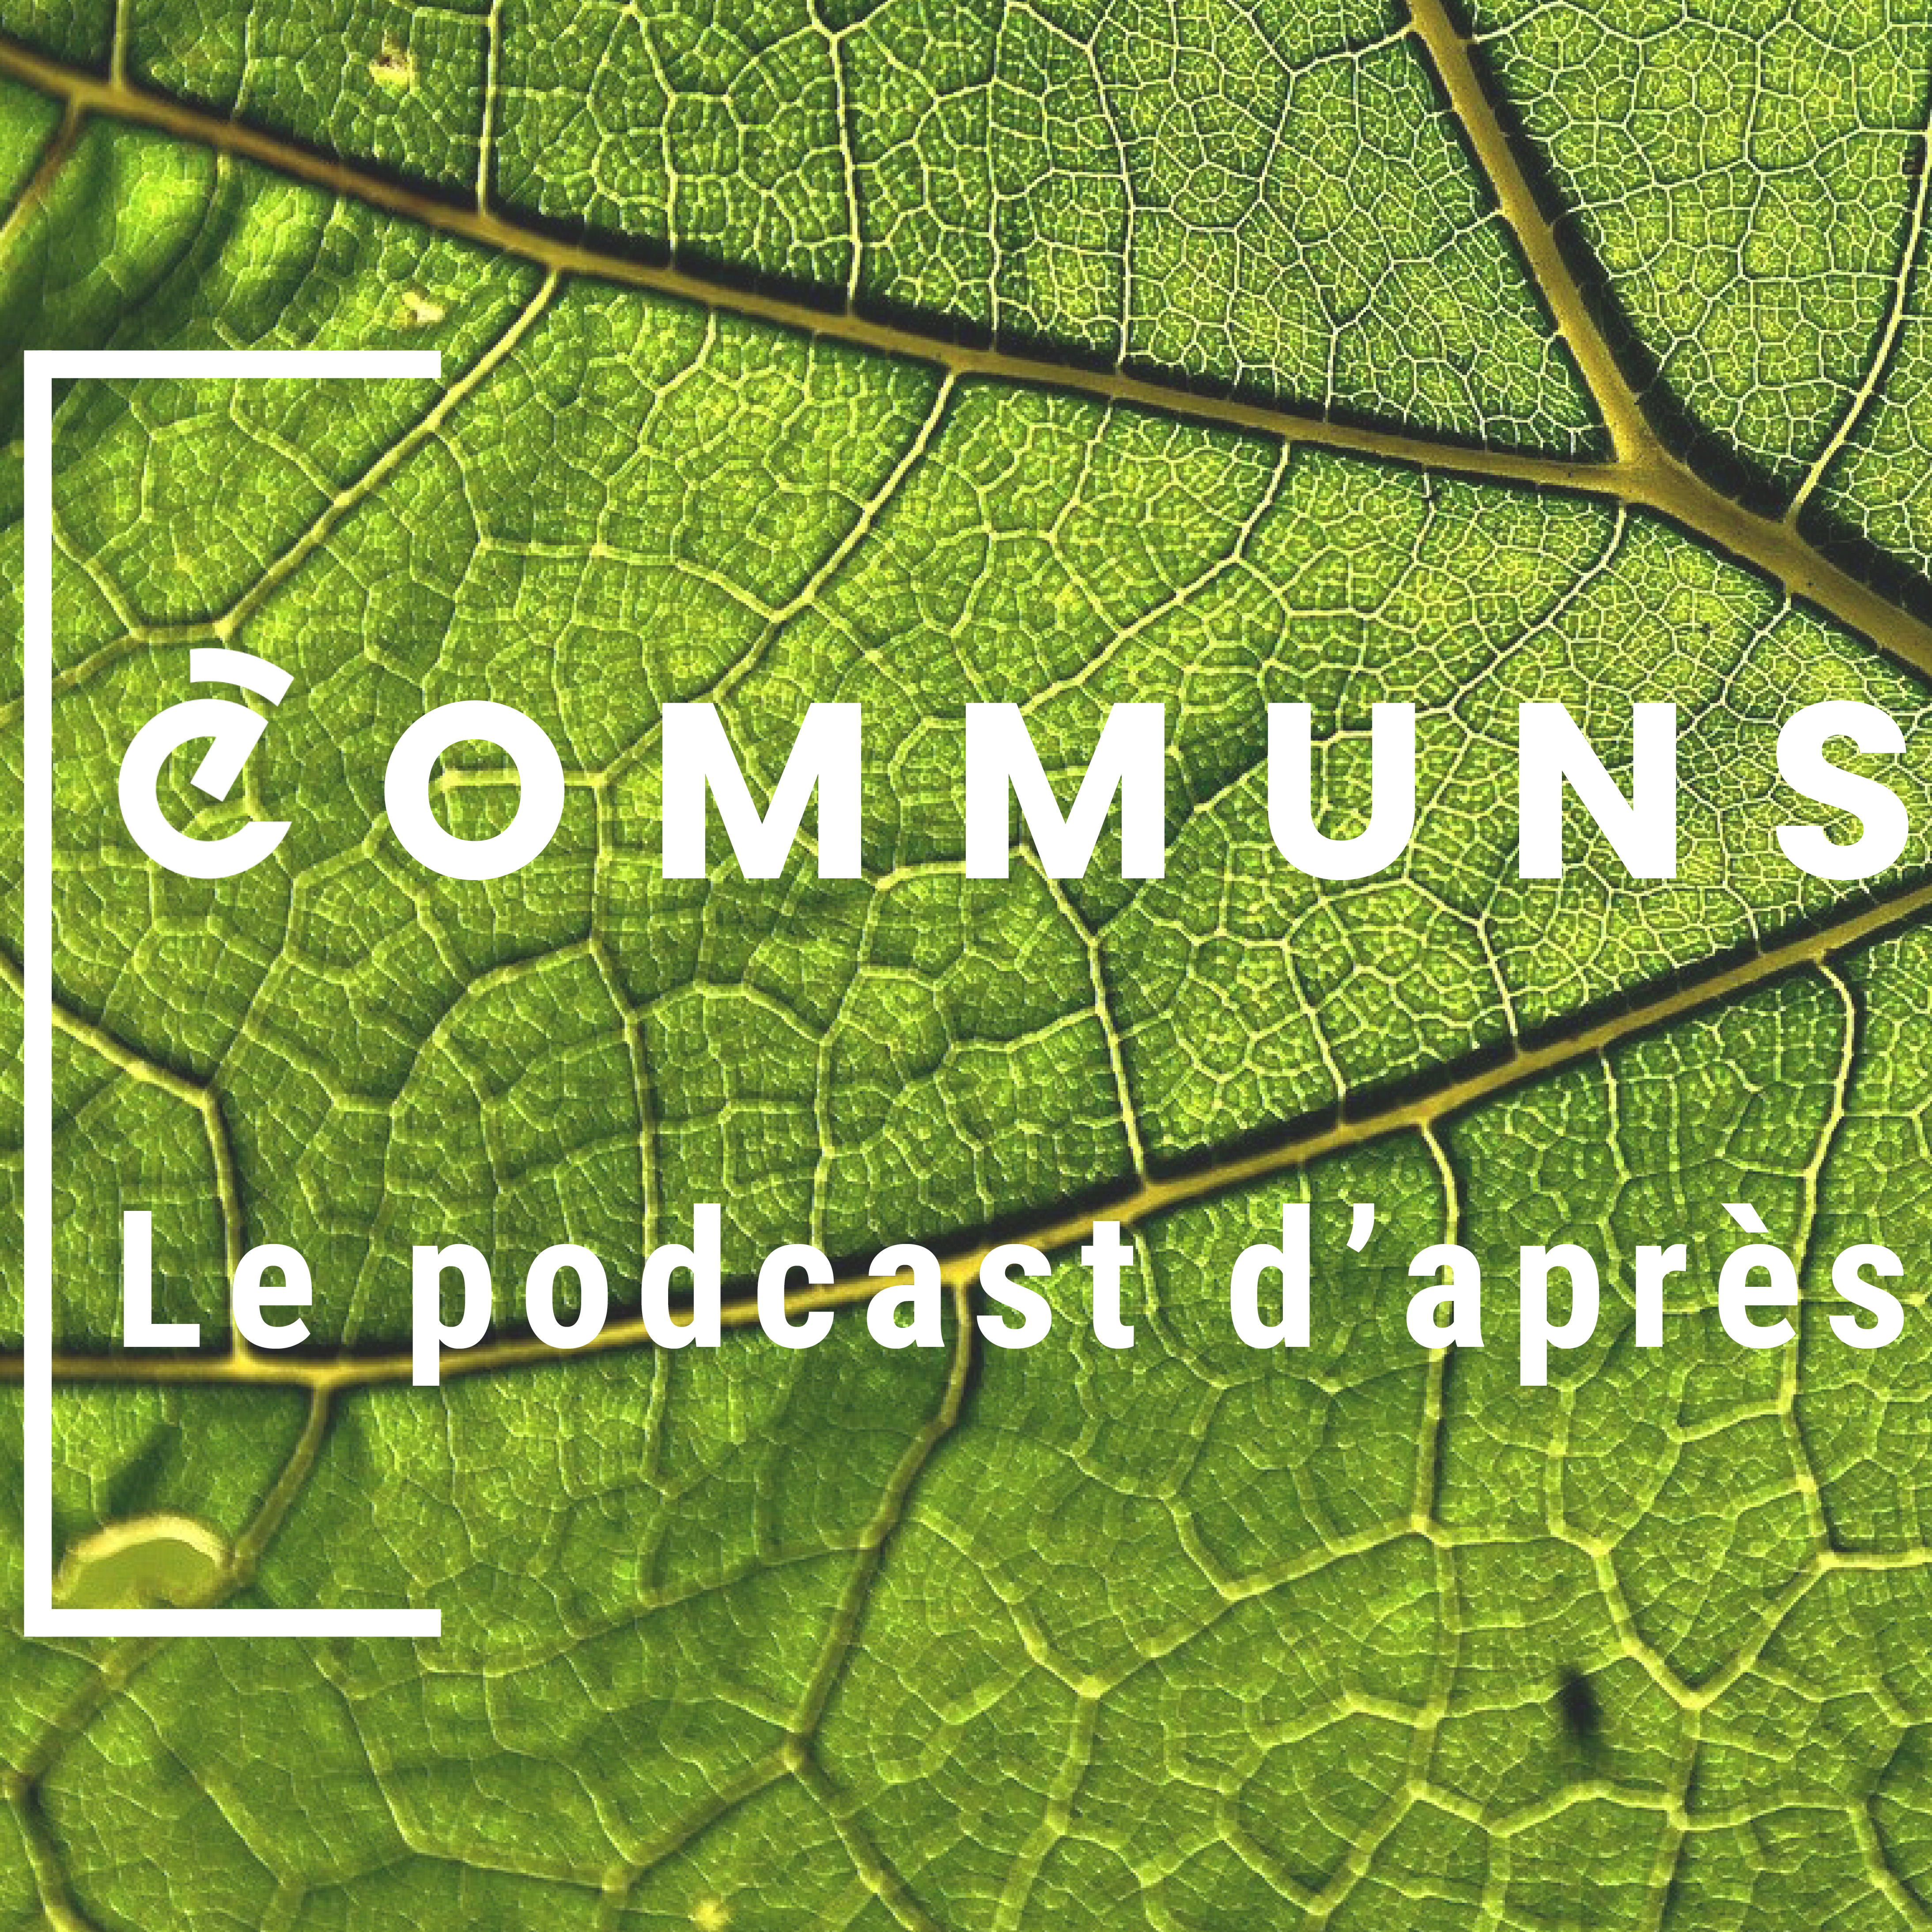 « COMMUNS: le podcast d’après »